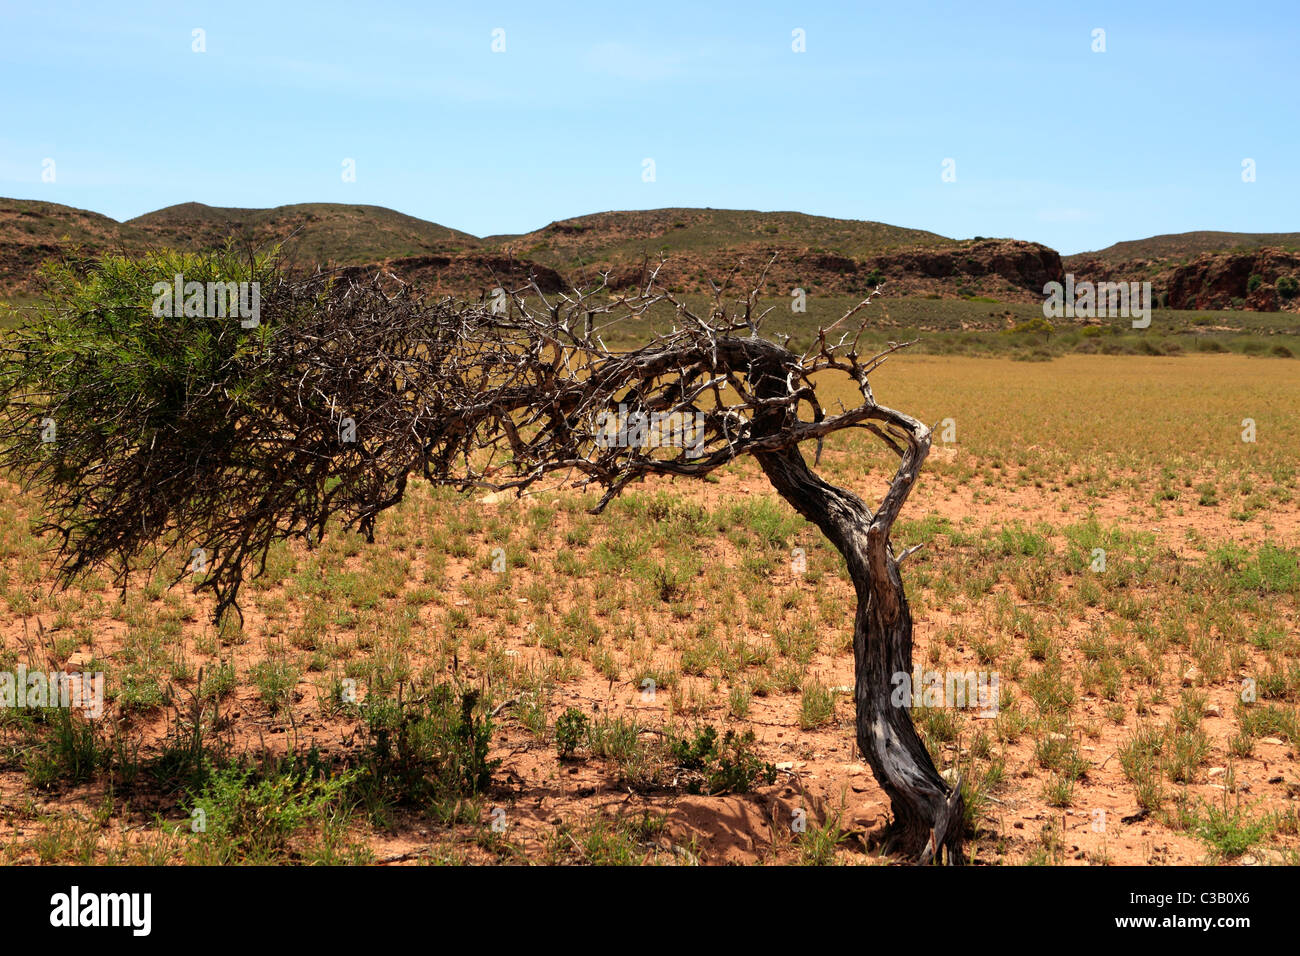 Arbre généalogique exposée au vent en paysage, Cape Range National Park, au nord-ouest de l'Australie Banque D'Images